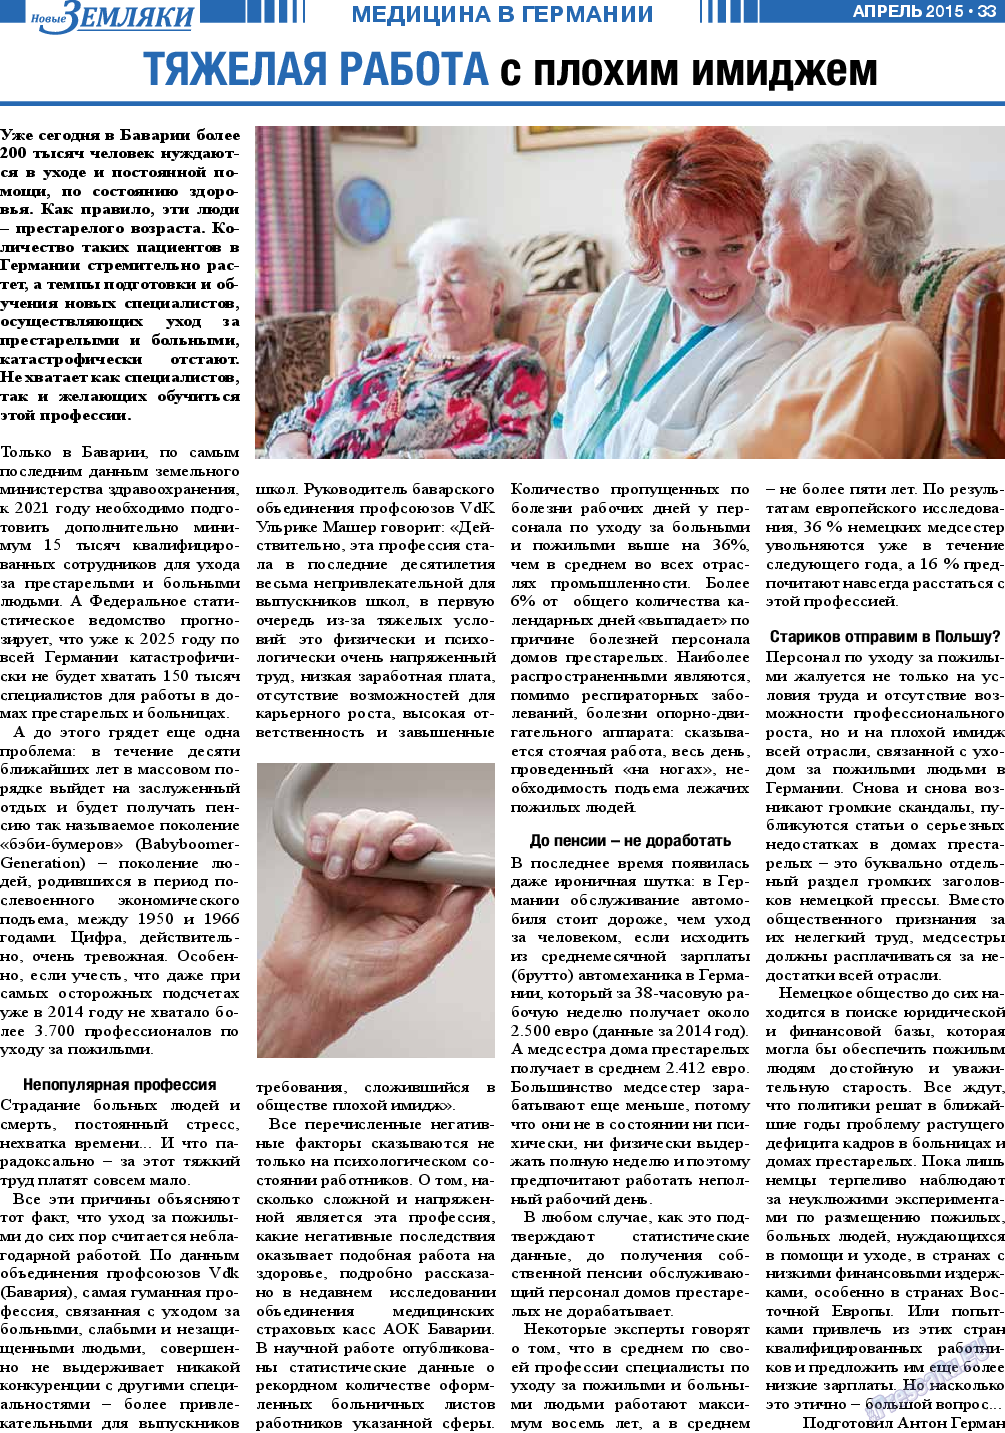 Новые Земляки, газета. 2015 №4 стр.33